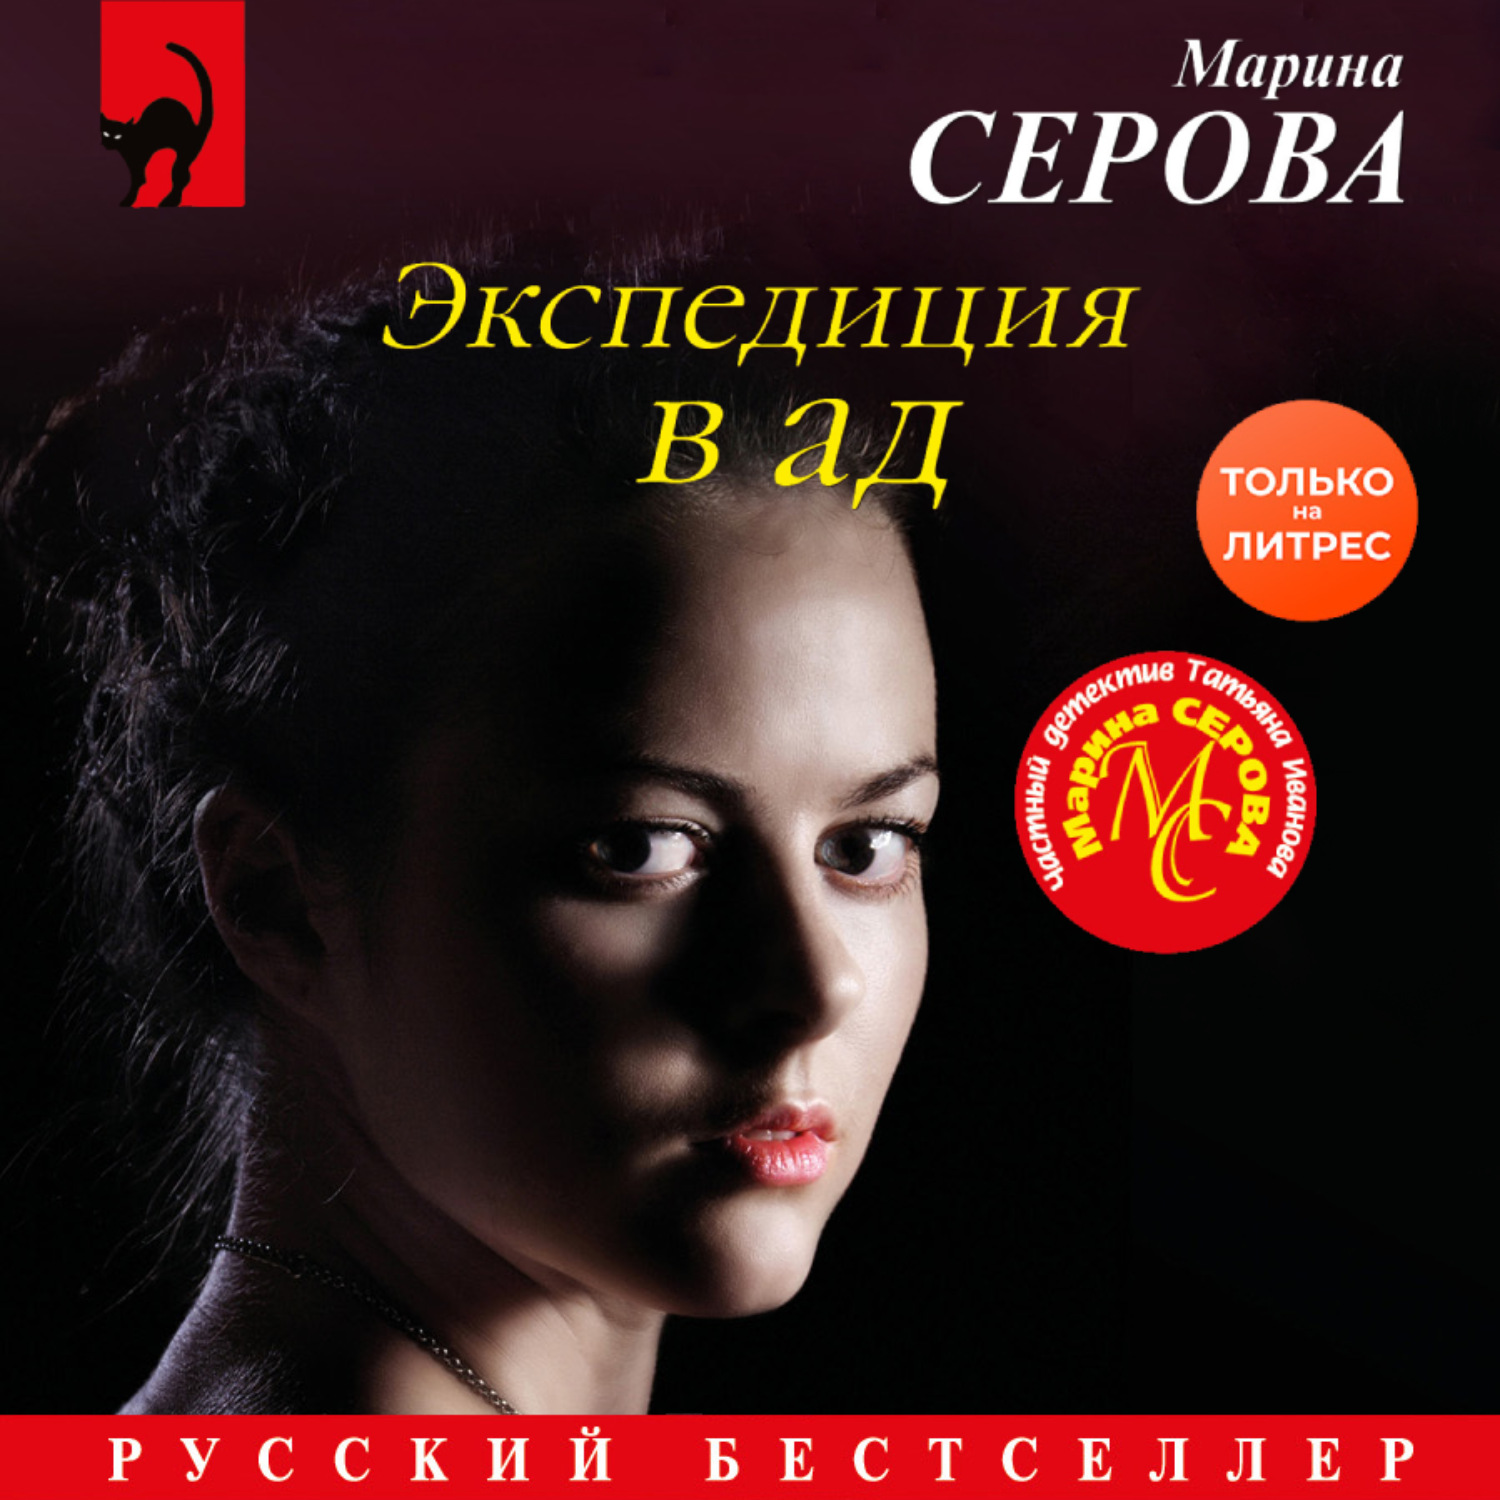 сердце красавицы склонно к измене слушать на русском опера фото 83